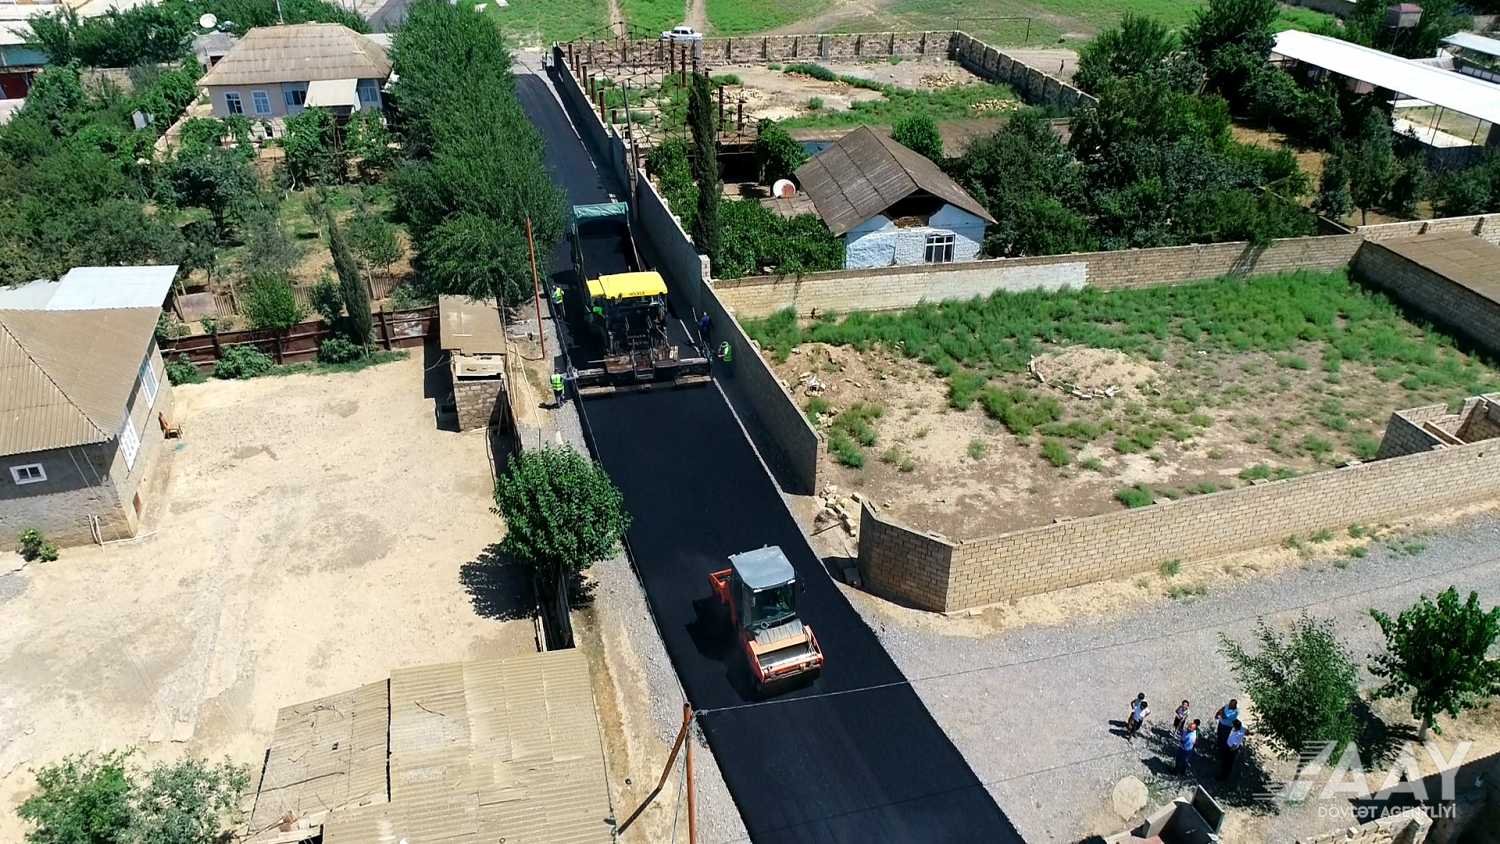 Əliabad-Xırmandalı-Bəydili avtomobil yolunun tikintisi yekunlaşmaq üzrədir VİDEO/FOTO